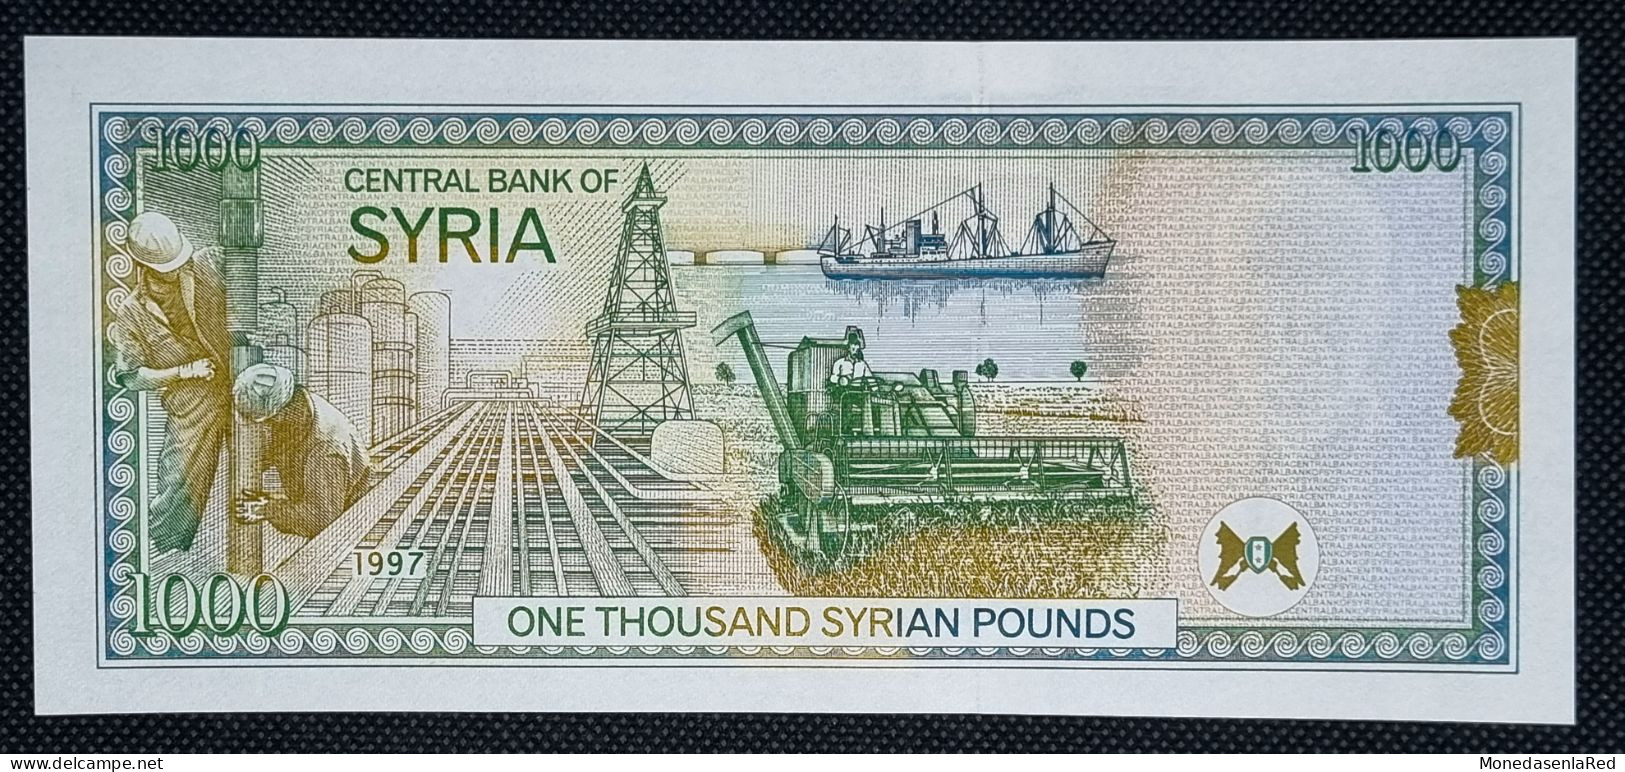 SIRIA / SYRIA 1000 LIBRAS 1997 SIN CIRCULAR / UNC. P-111a - Syria